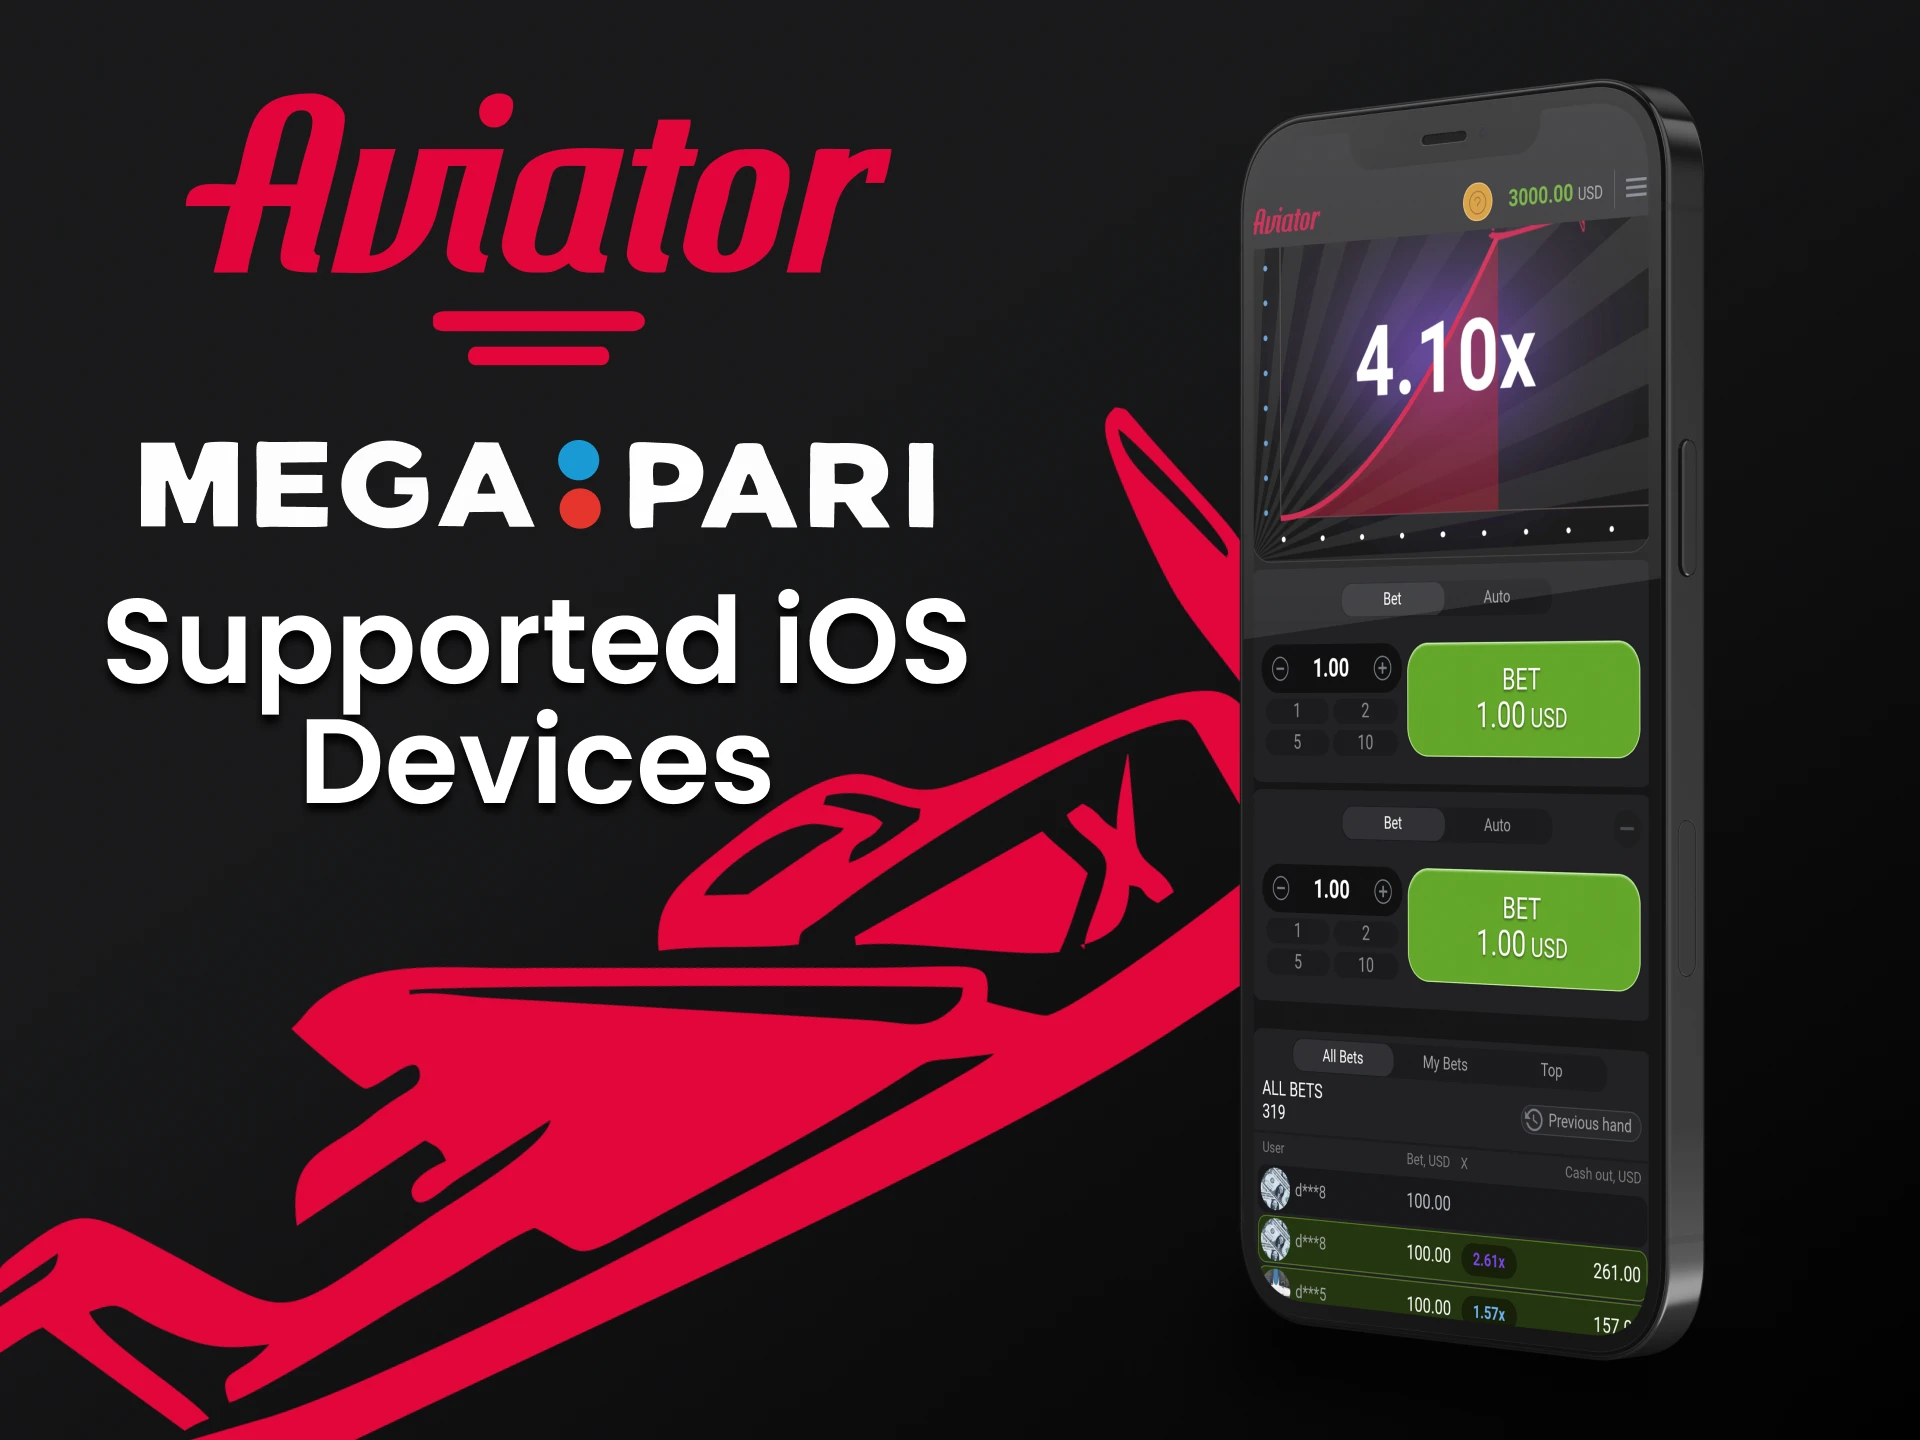 Para jogar Aviator, use o aplicativo Megapari para iOS.